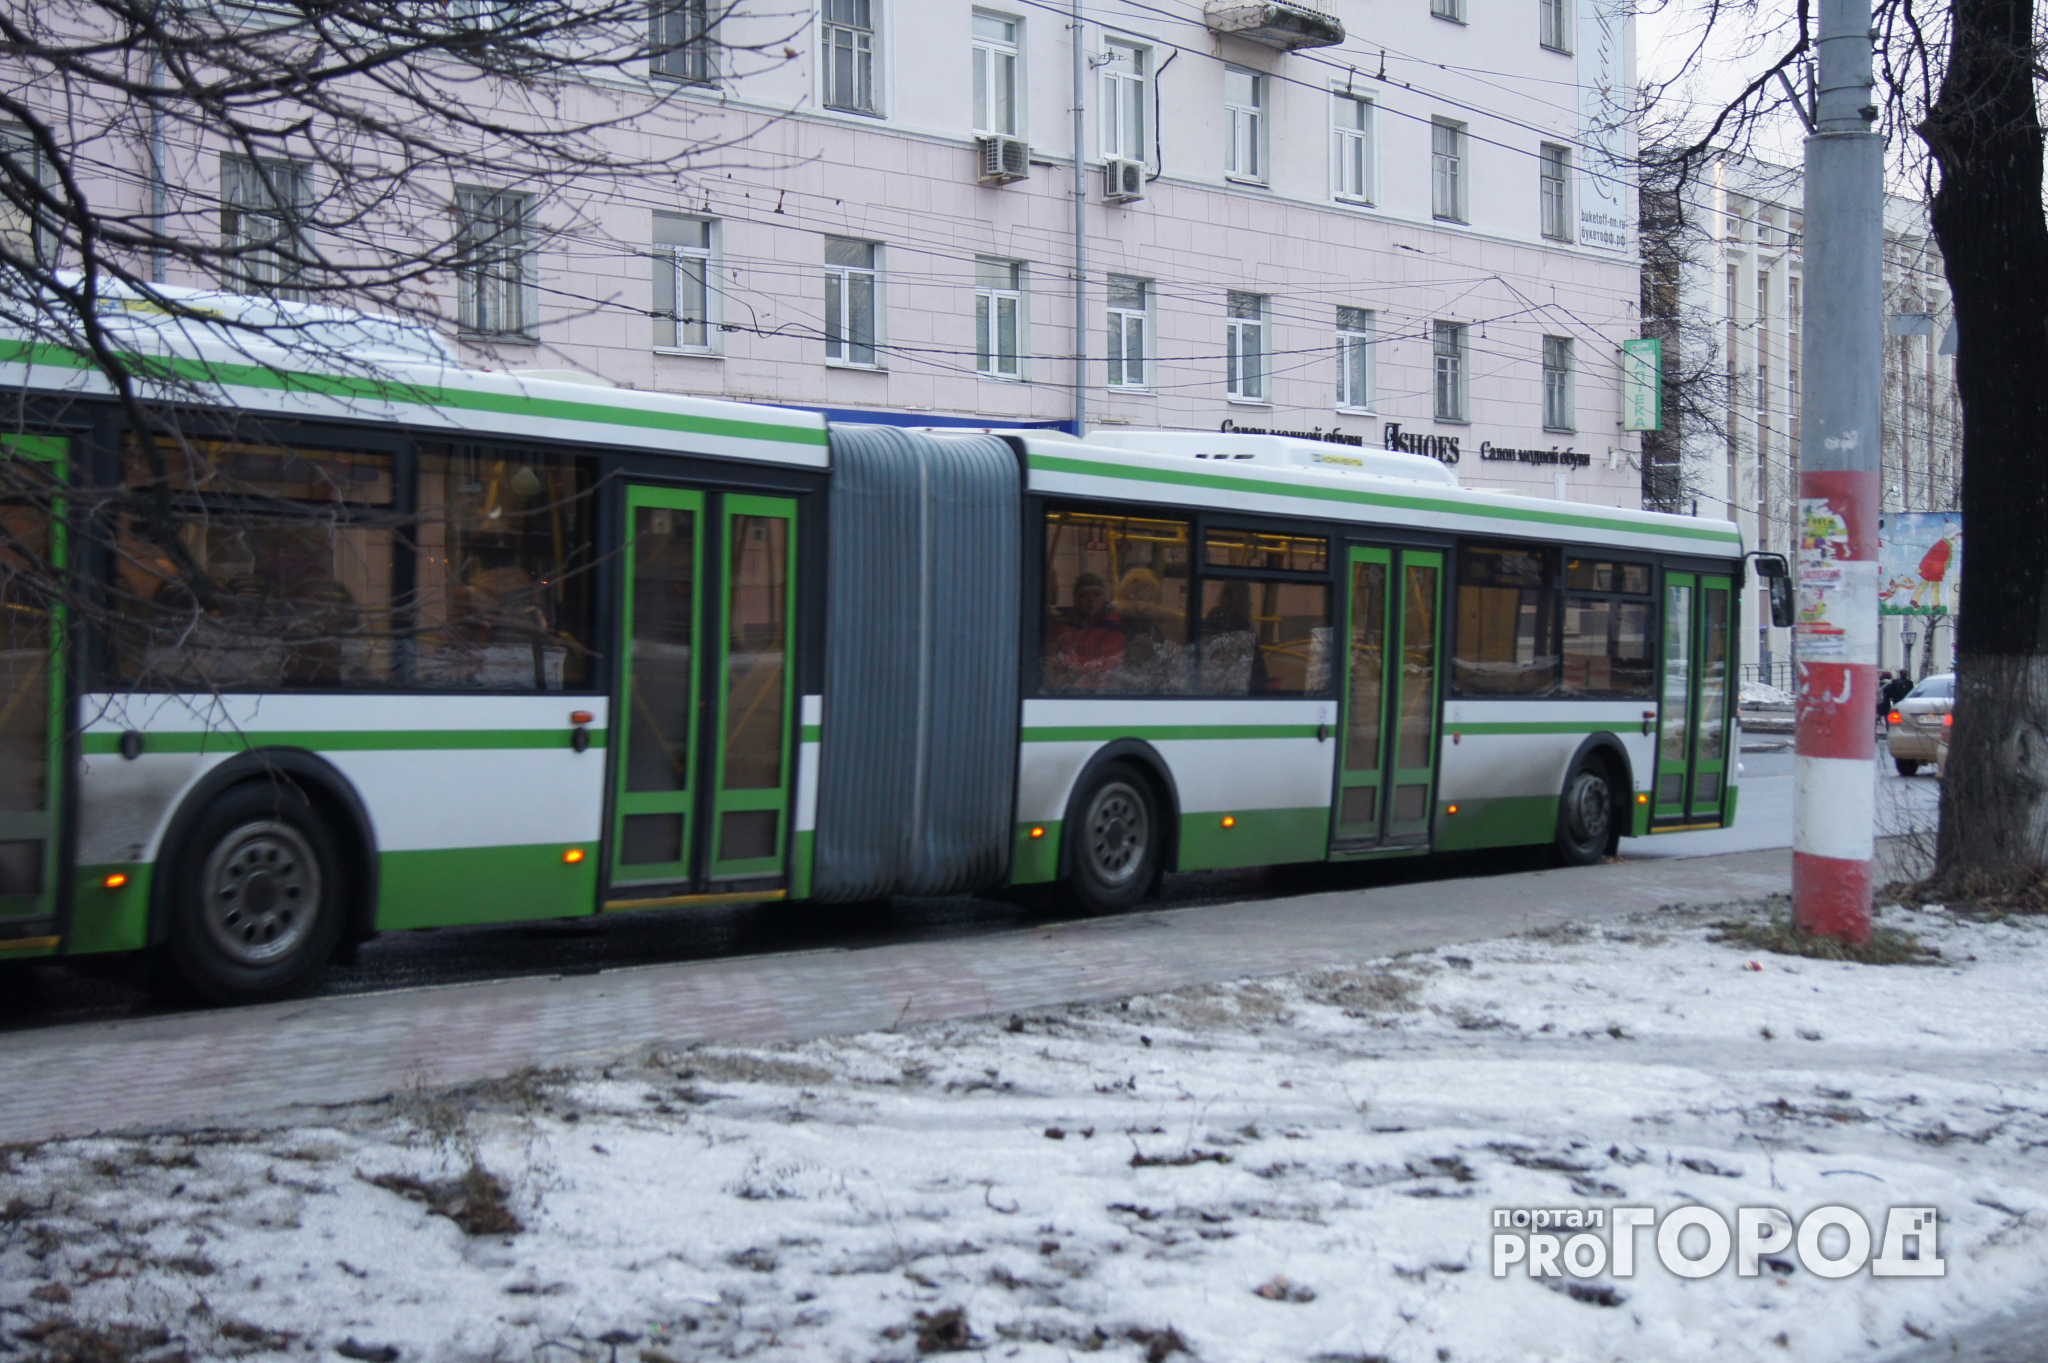 Три новых автобусных маршрута появятся в Нижнем Новгороде